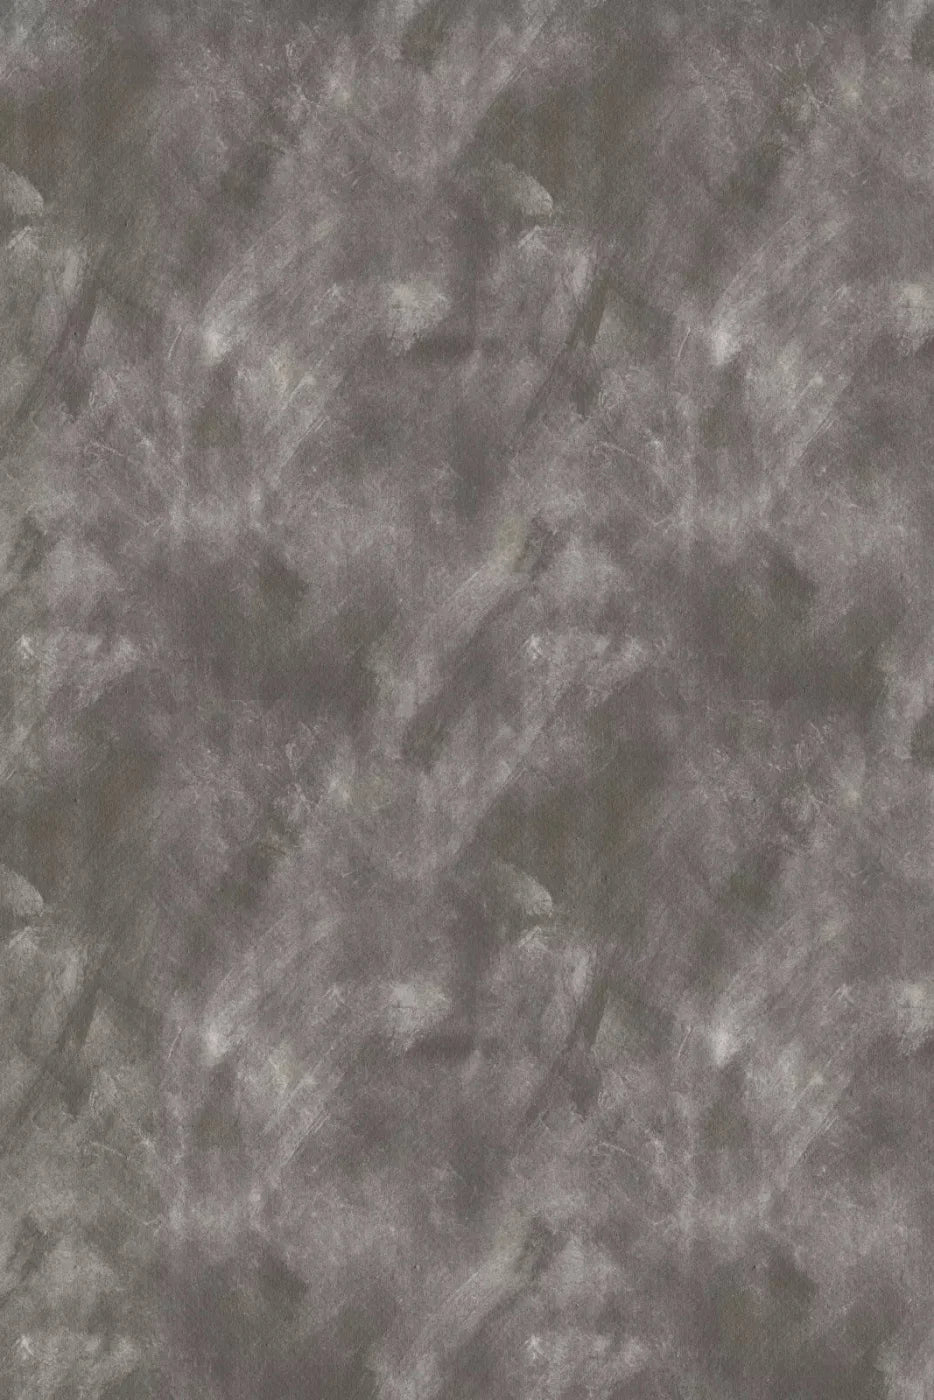 Bertrum 4X5 Rubbermat Floor ( 48 X 60 Inch ) Backdrop